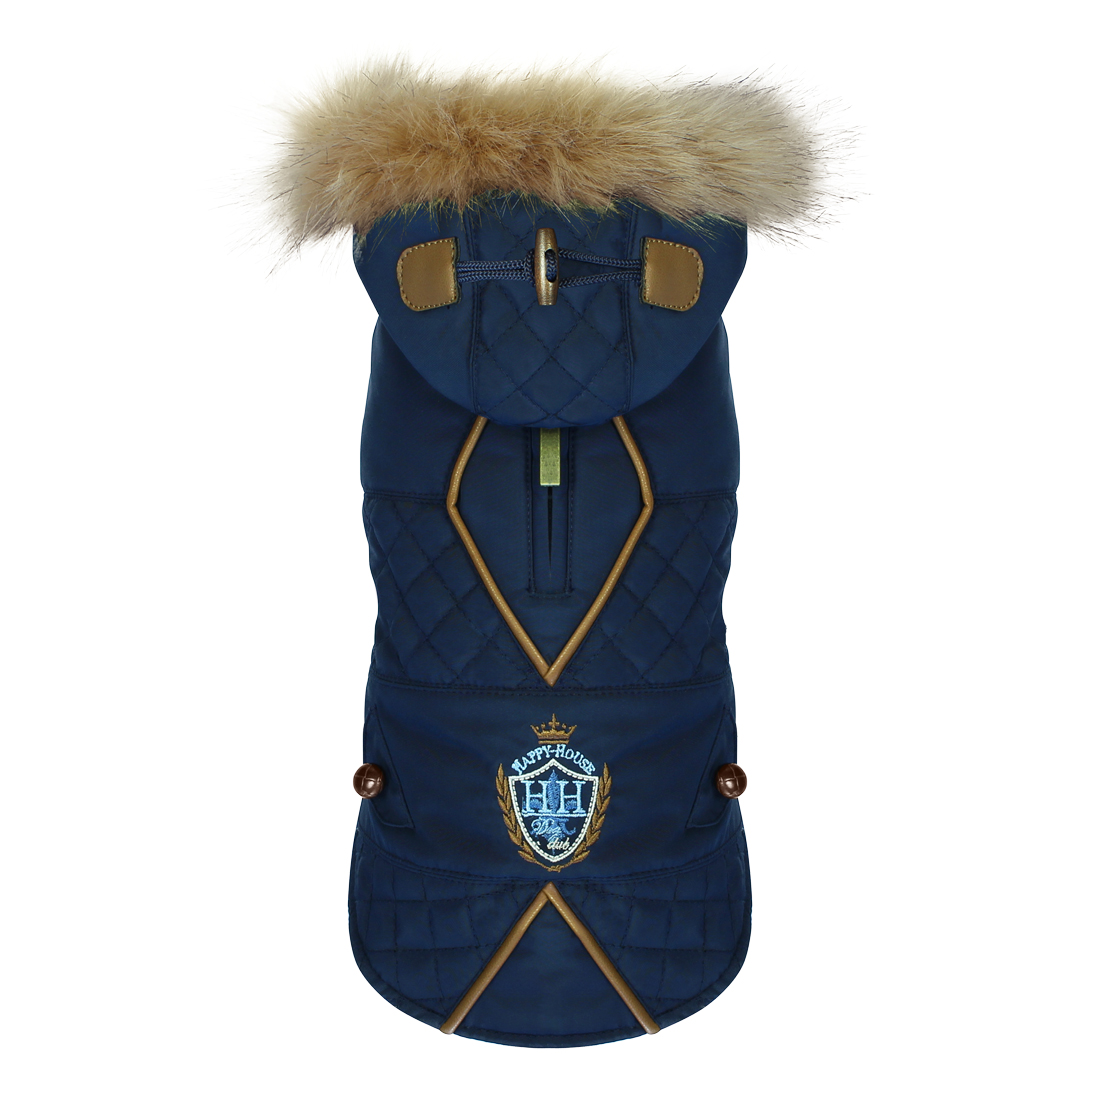 dogfashion jacket royal blue size 44